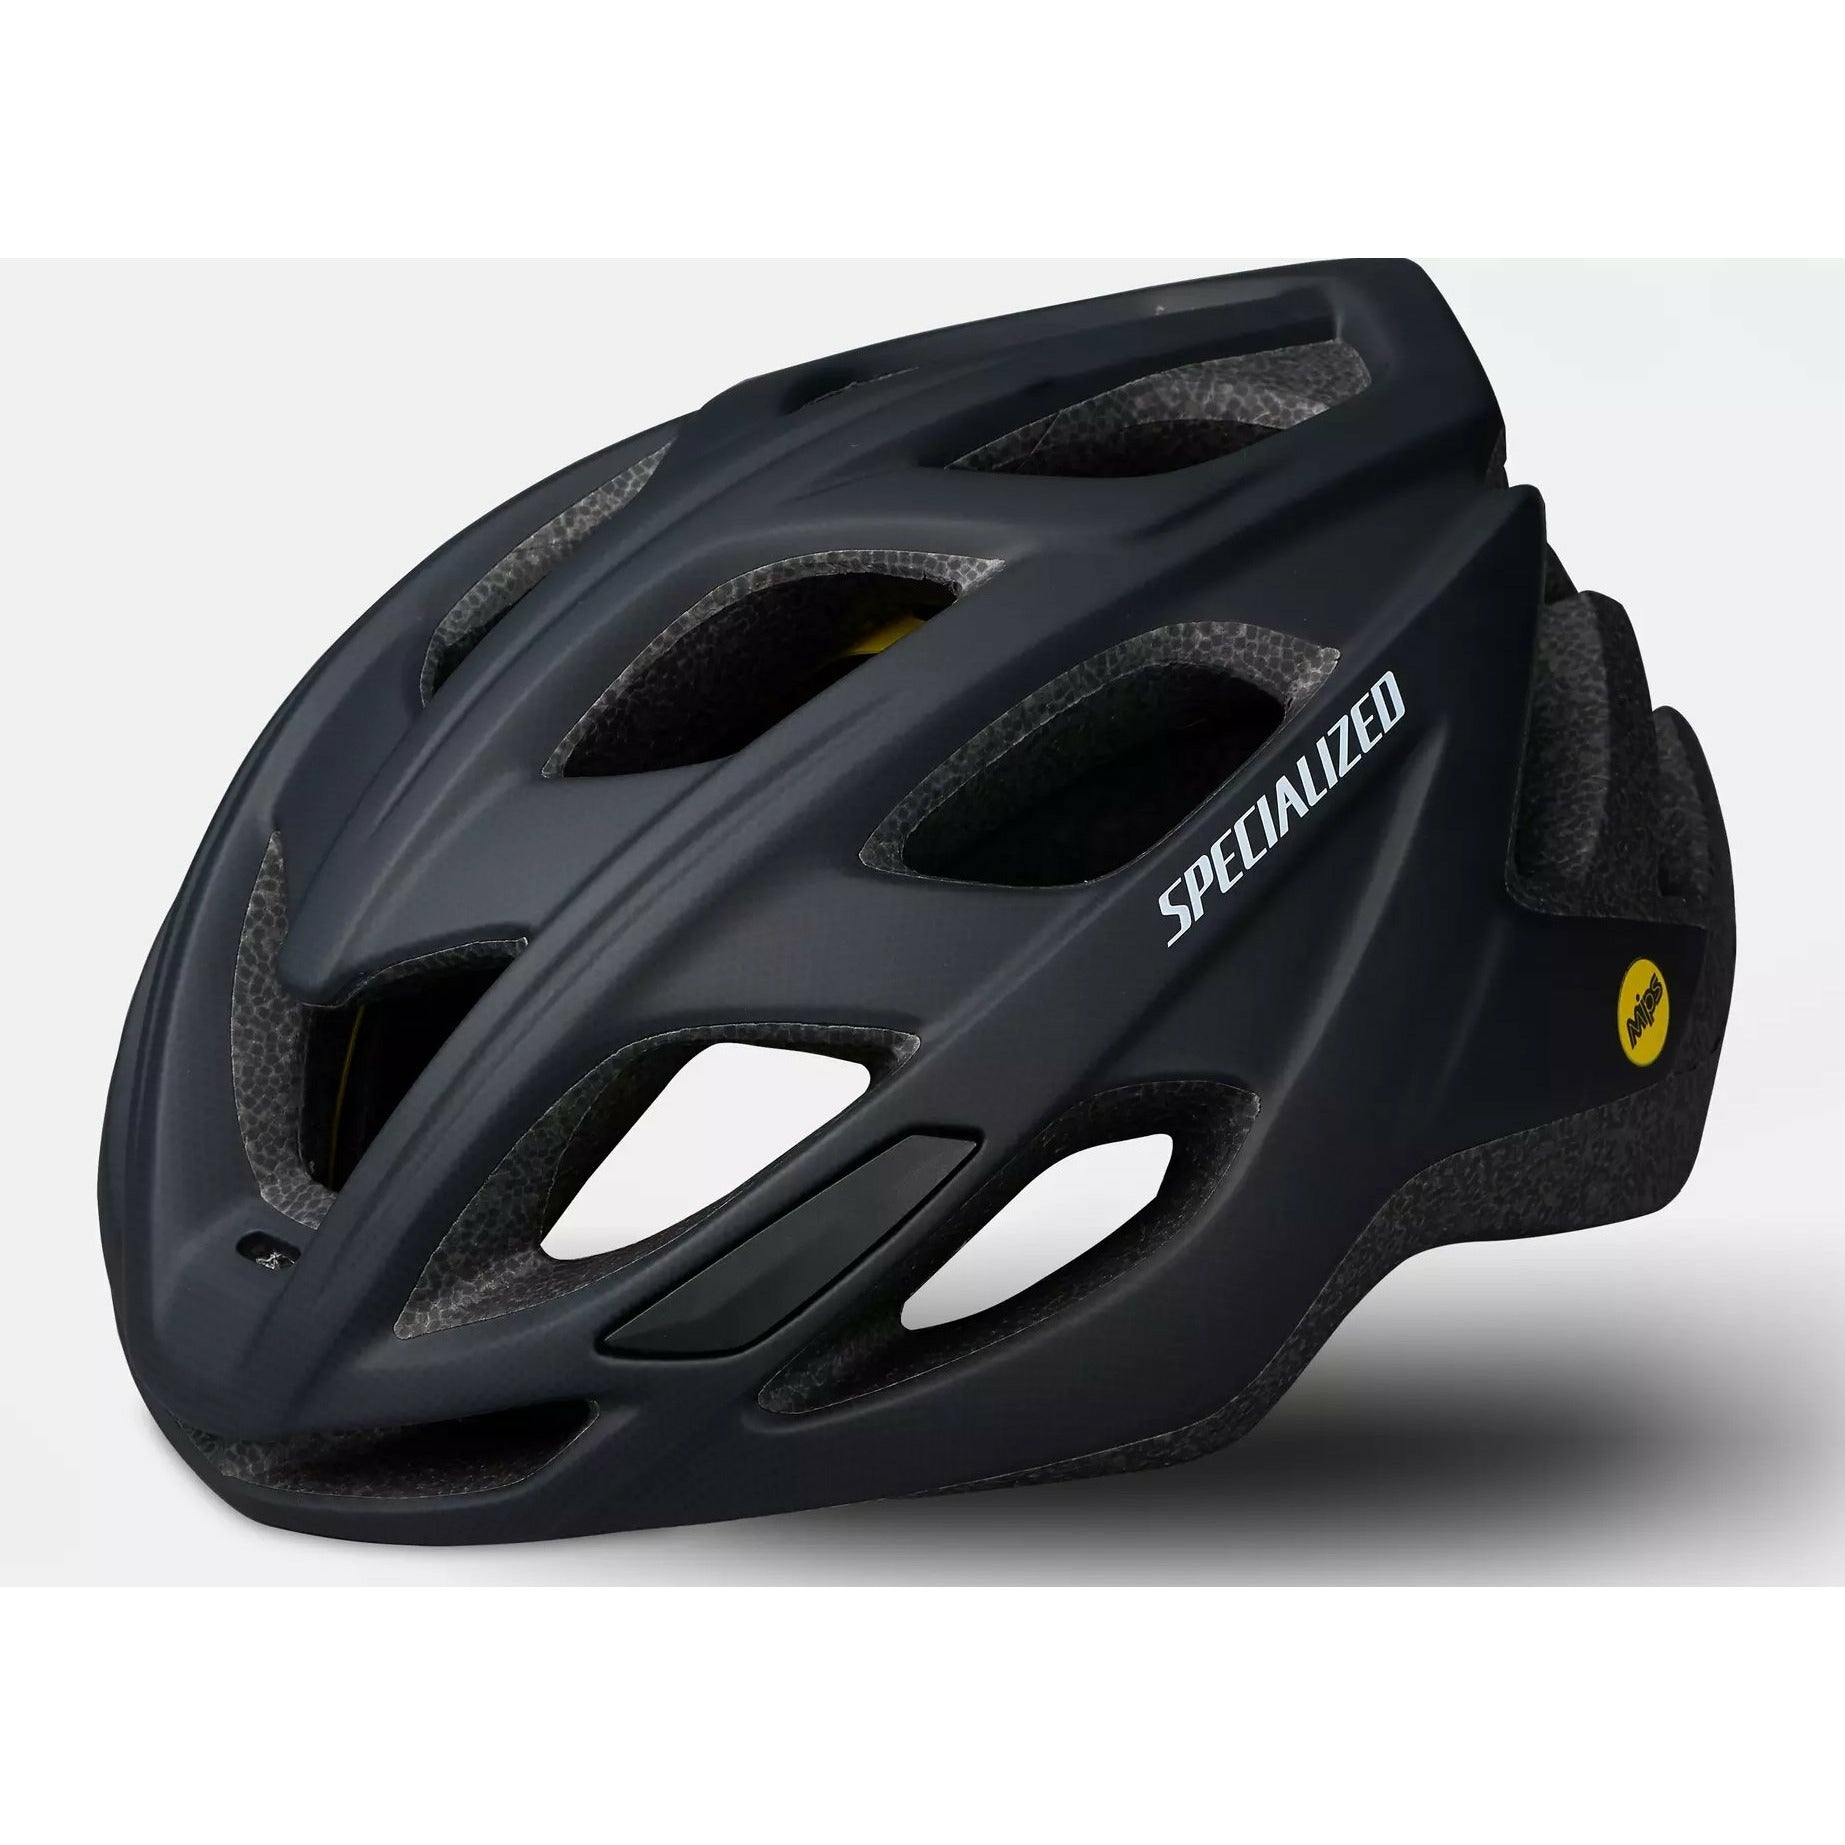 Specialized Chamonix 2 MIPS Recreational Bike Helmet